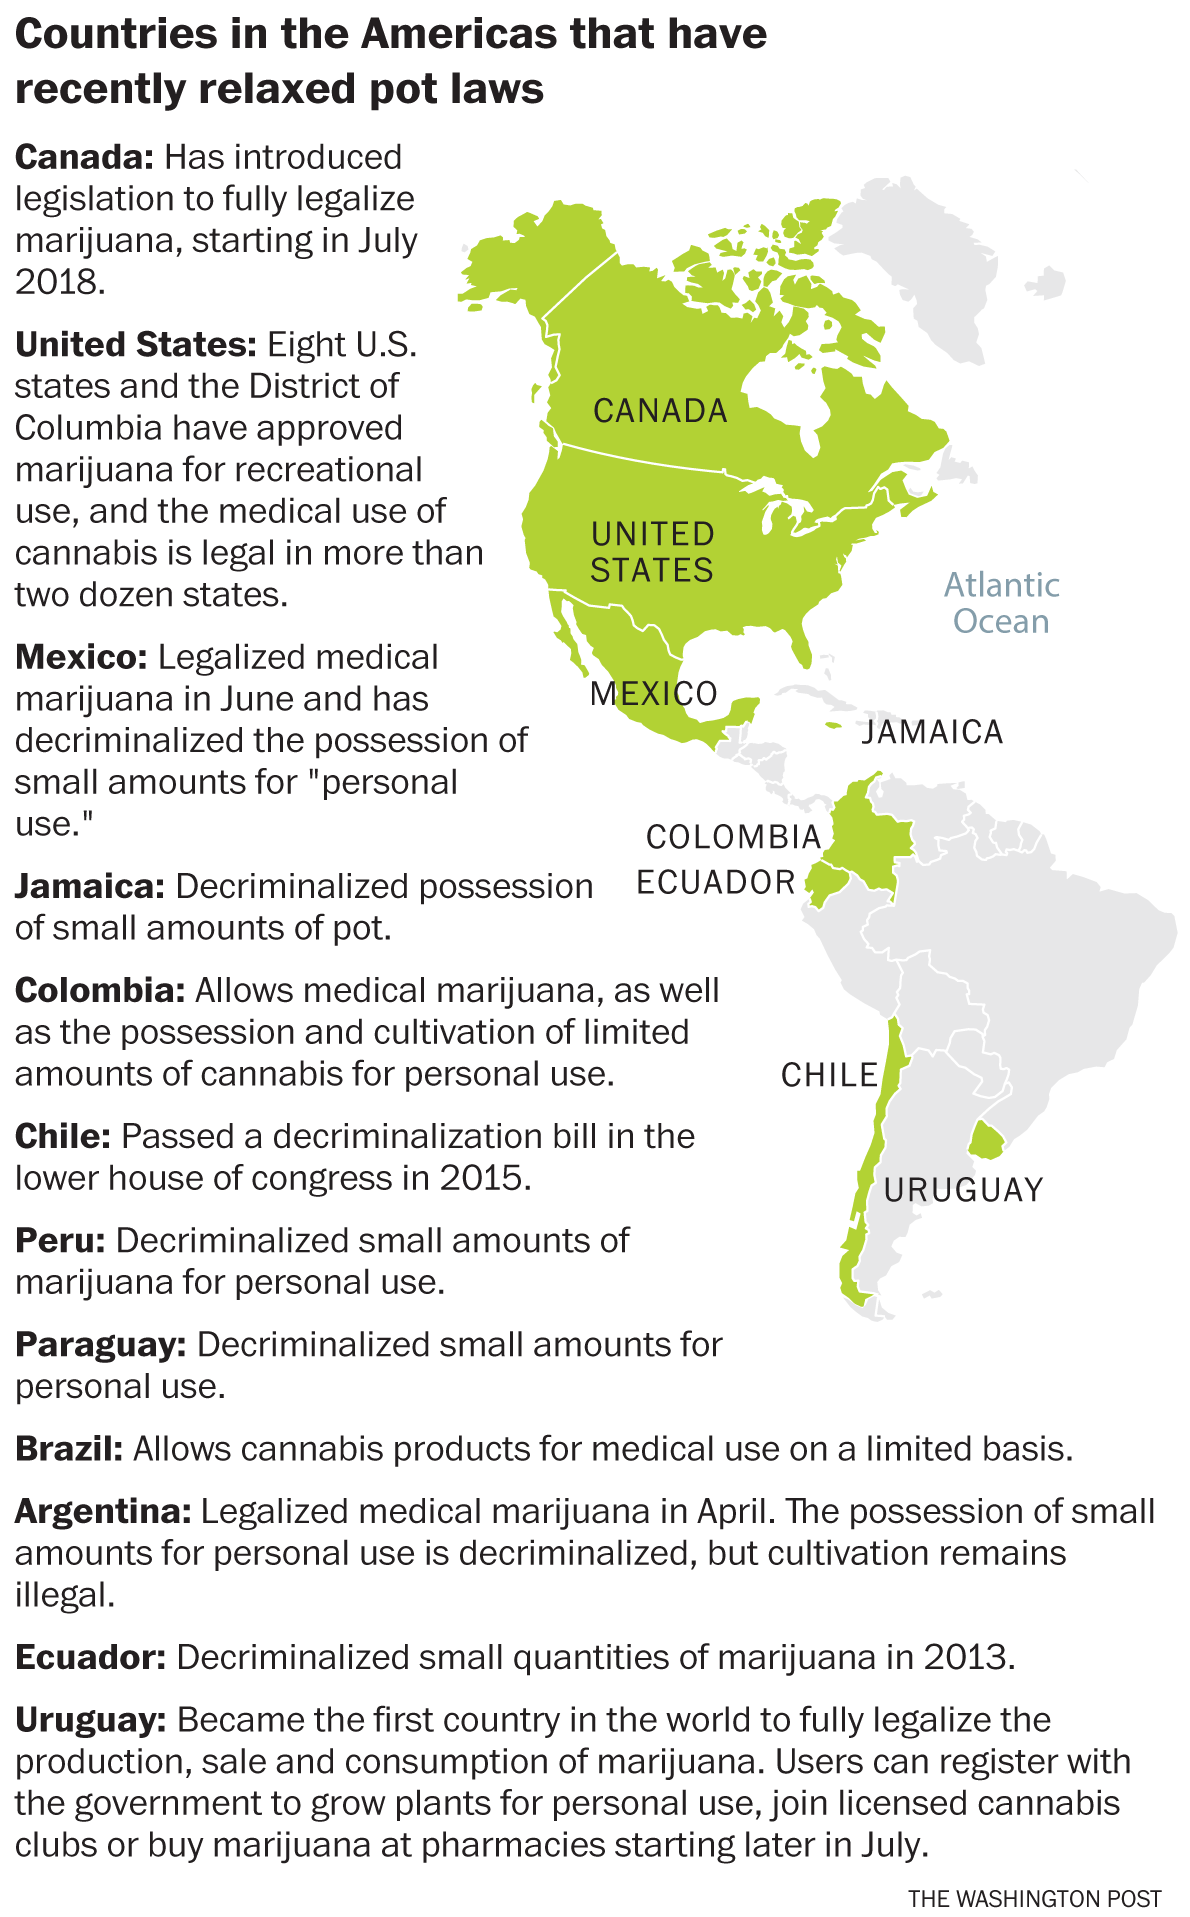 uruguay-cannabis-laws-americas